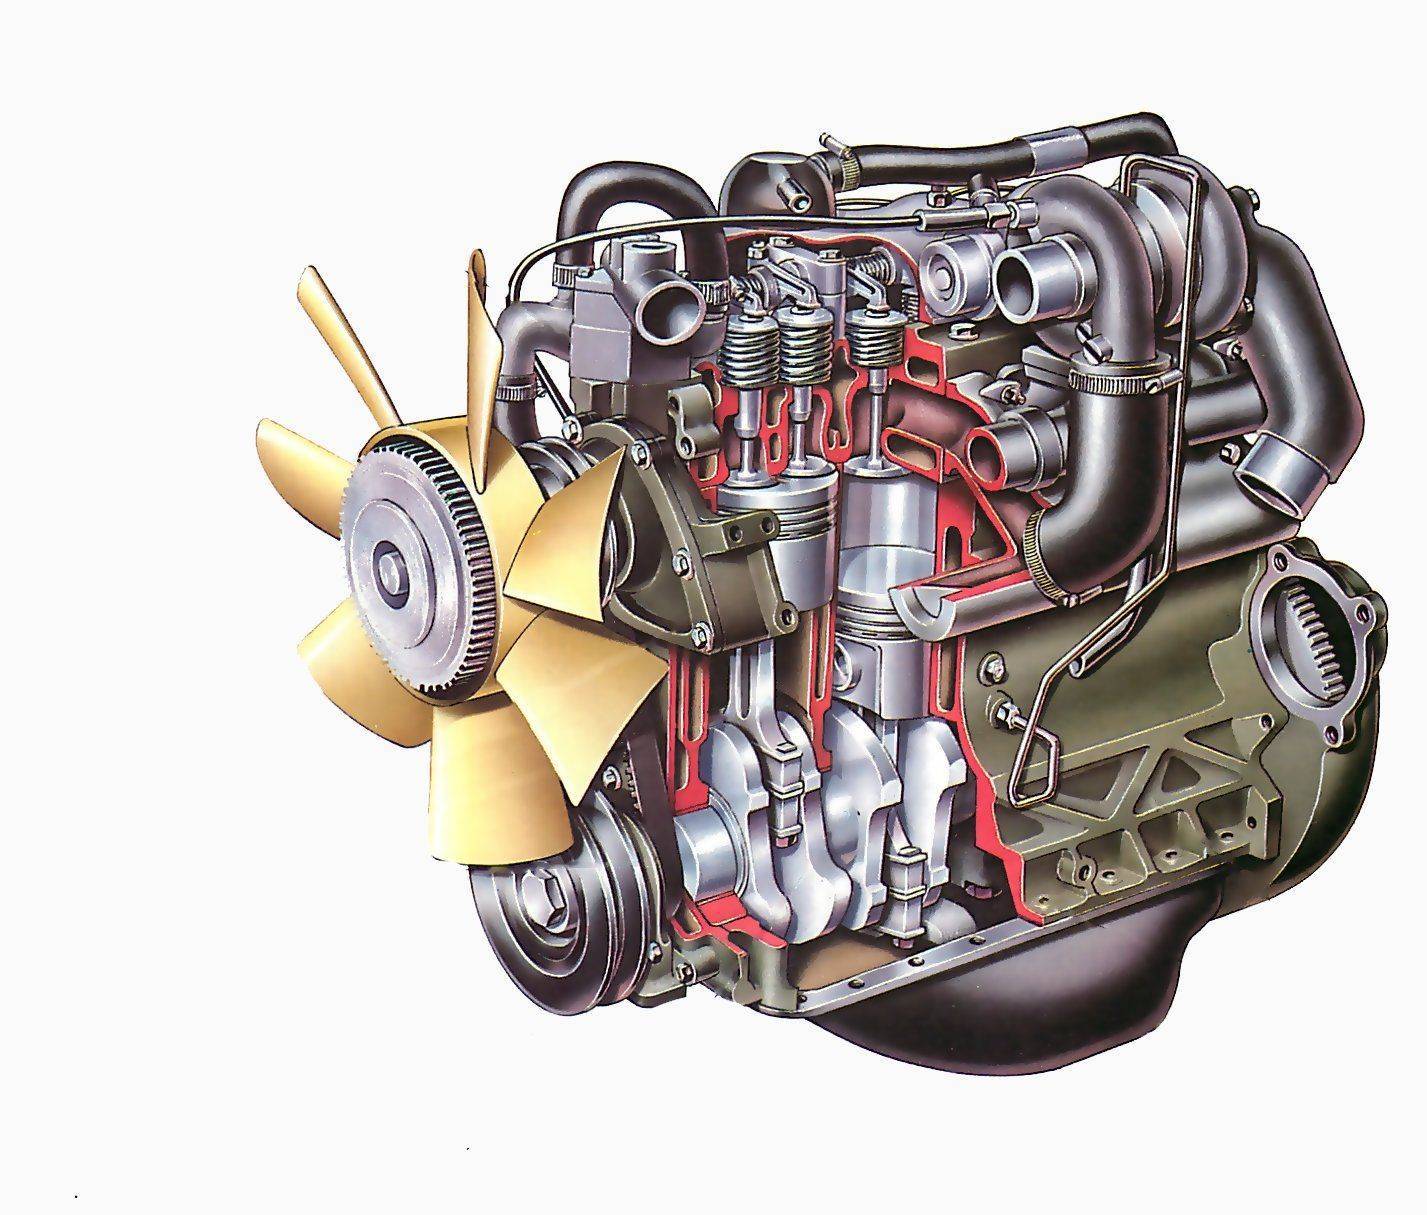 Самые надёжные дизельные двигатели | авто info